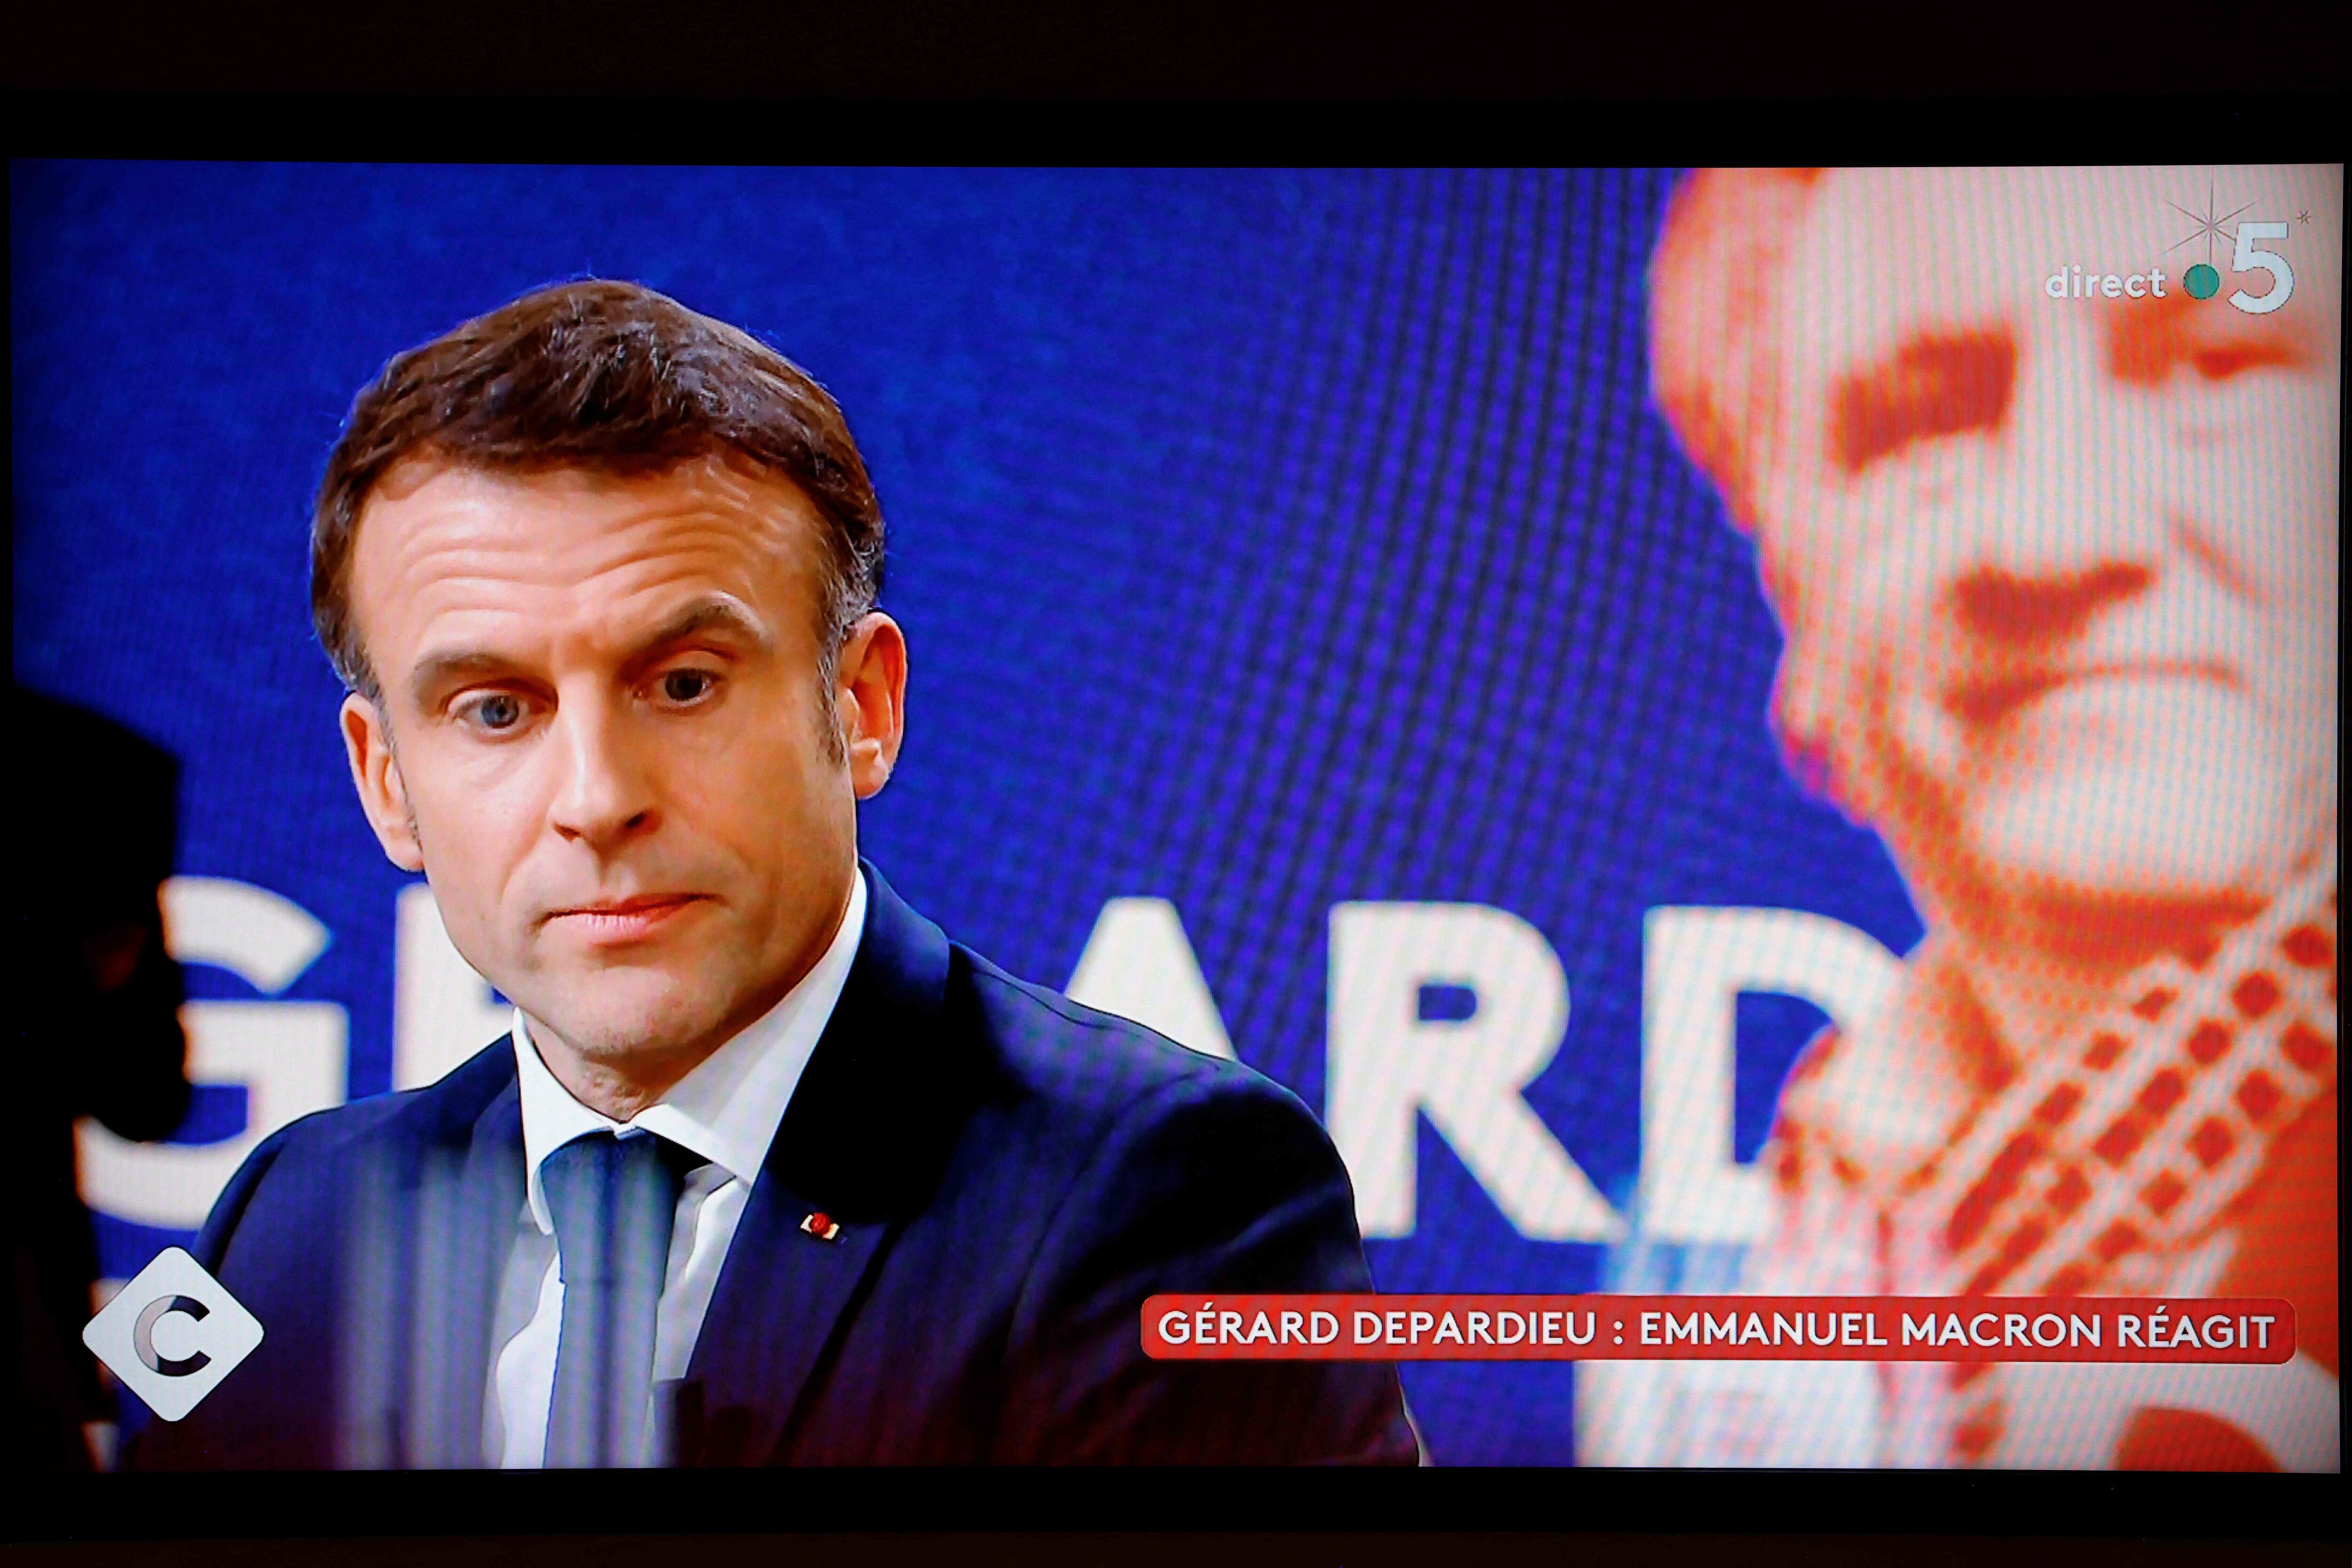 Emmanuel Macron, presidente de Francia, se posicionaba a favor de Depardieu en un programa de televisión, el 20 de diciembre.